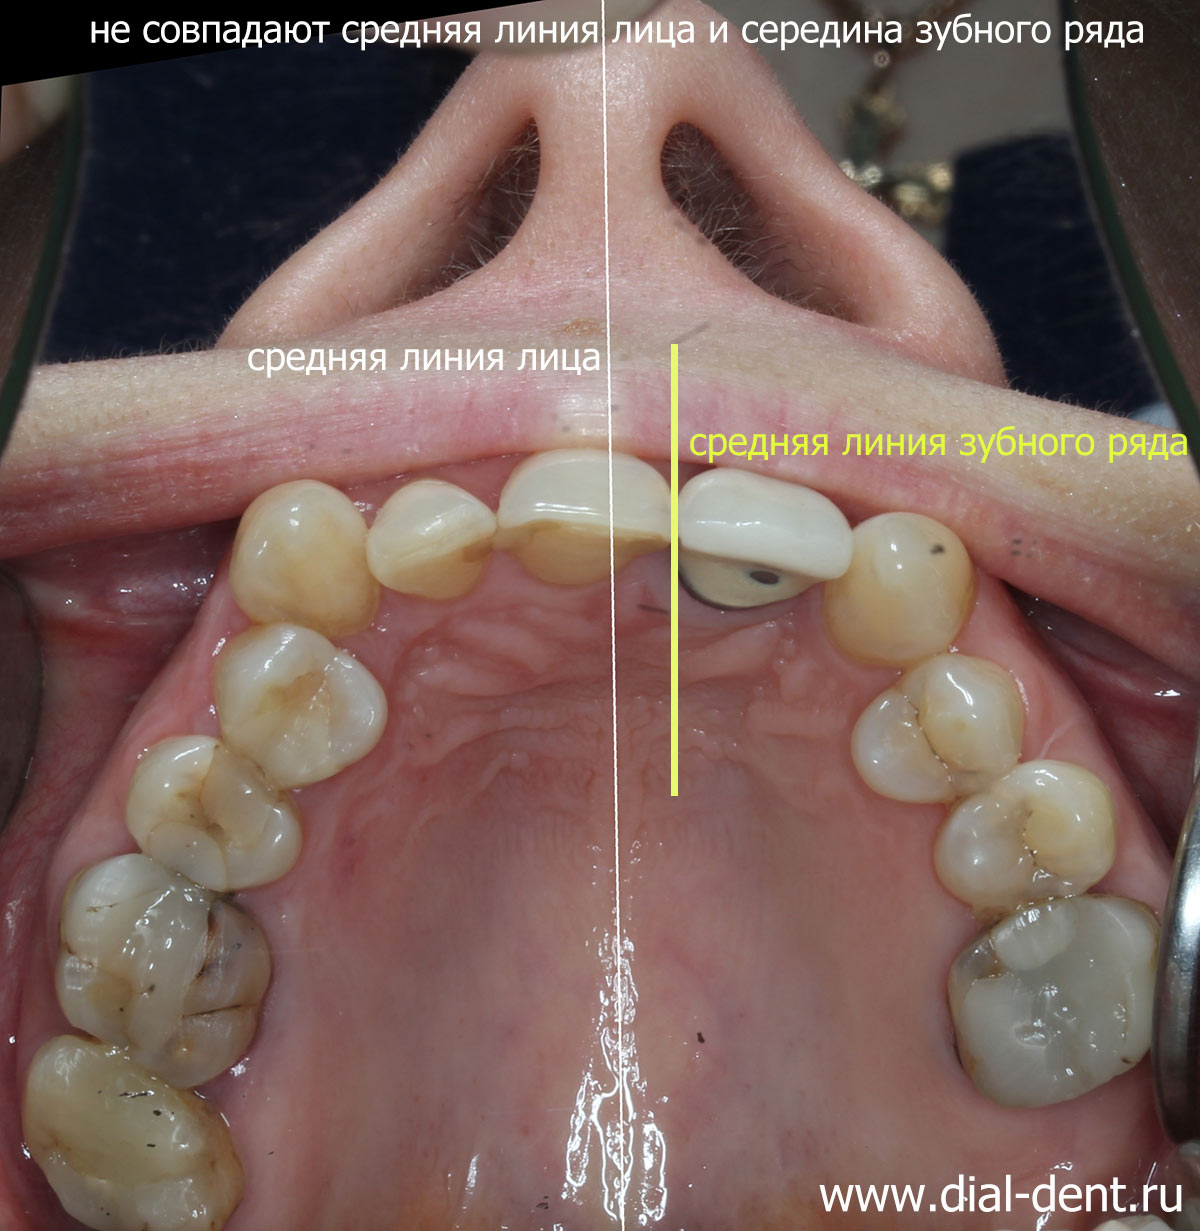 несовпадение средних линий лица и зубов